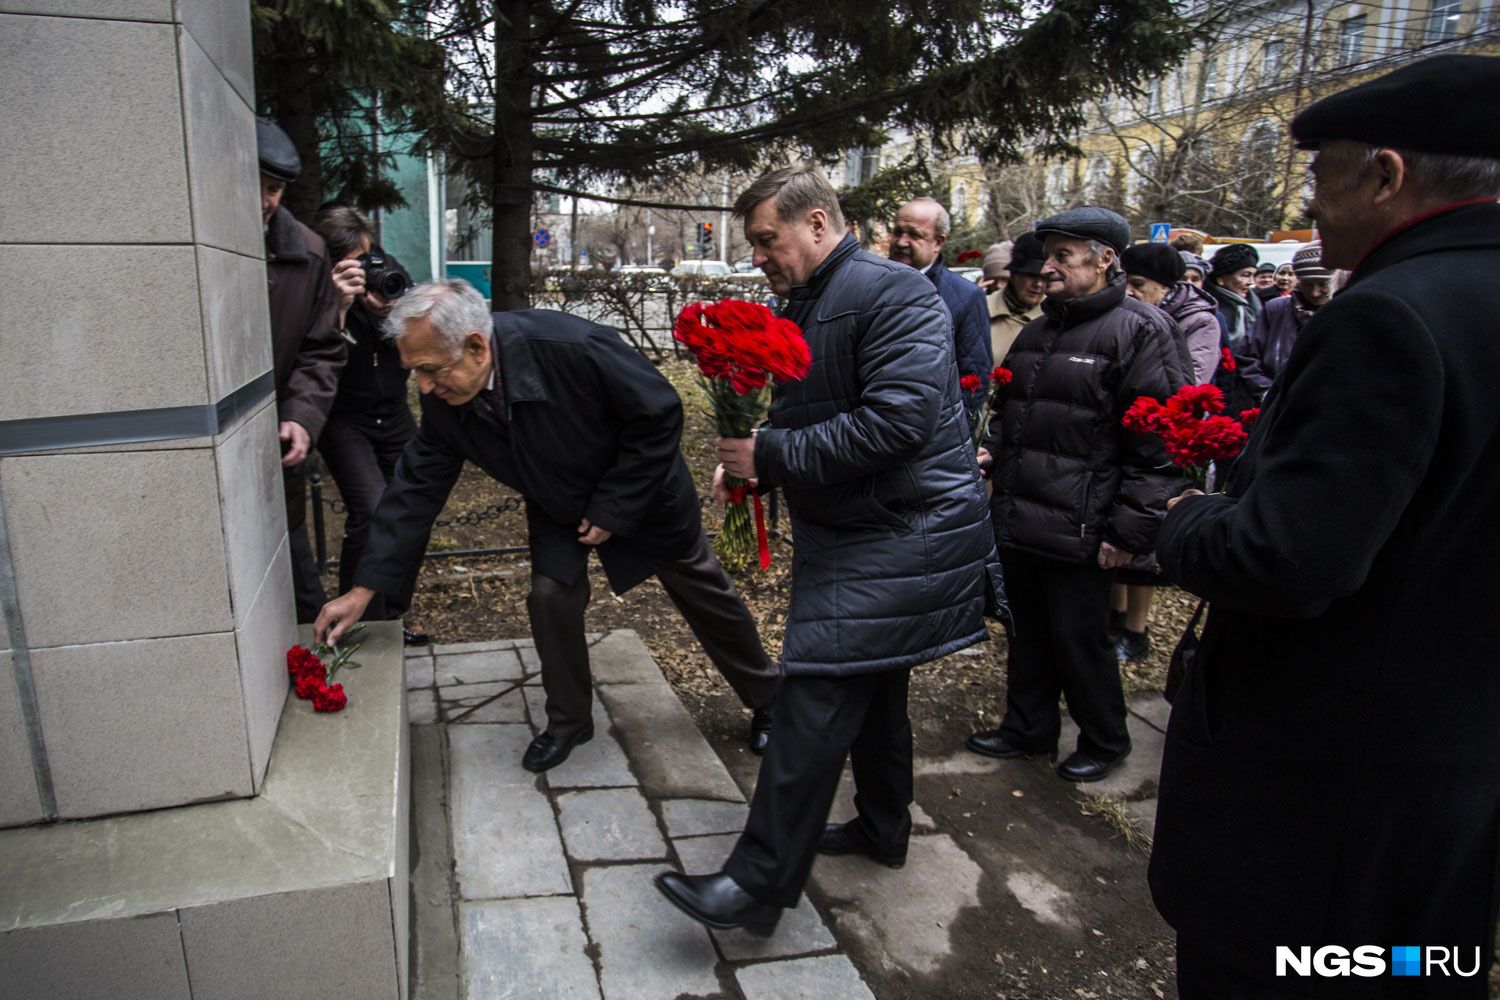 Участники праздника положили гвоздики под бюст Ленина. На фото на первом плане — мэр Анатолий Локоть с цветами в руках